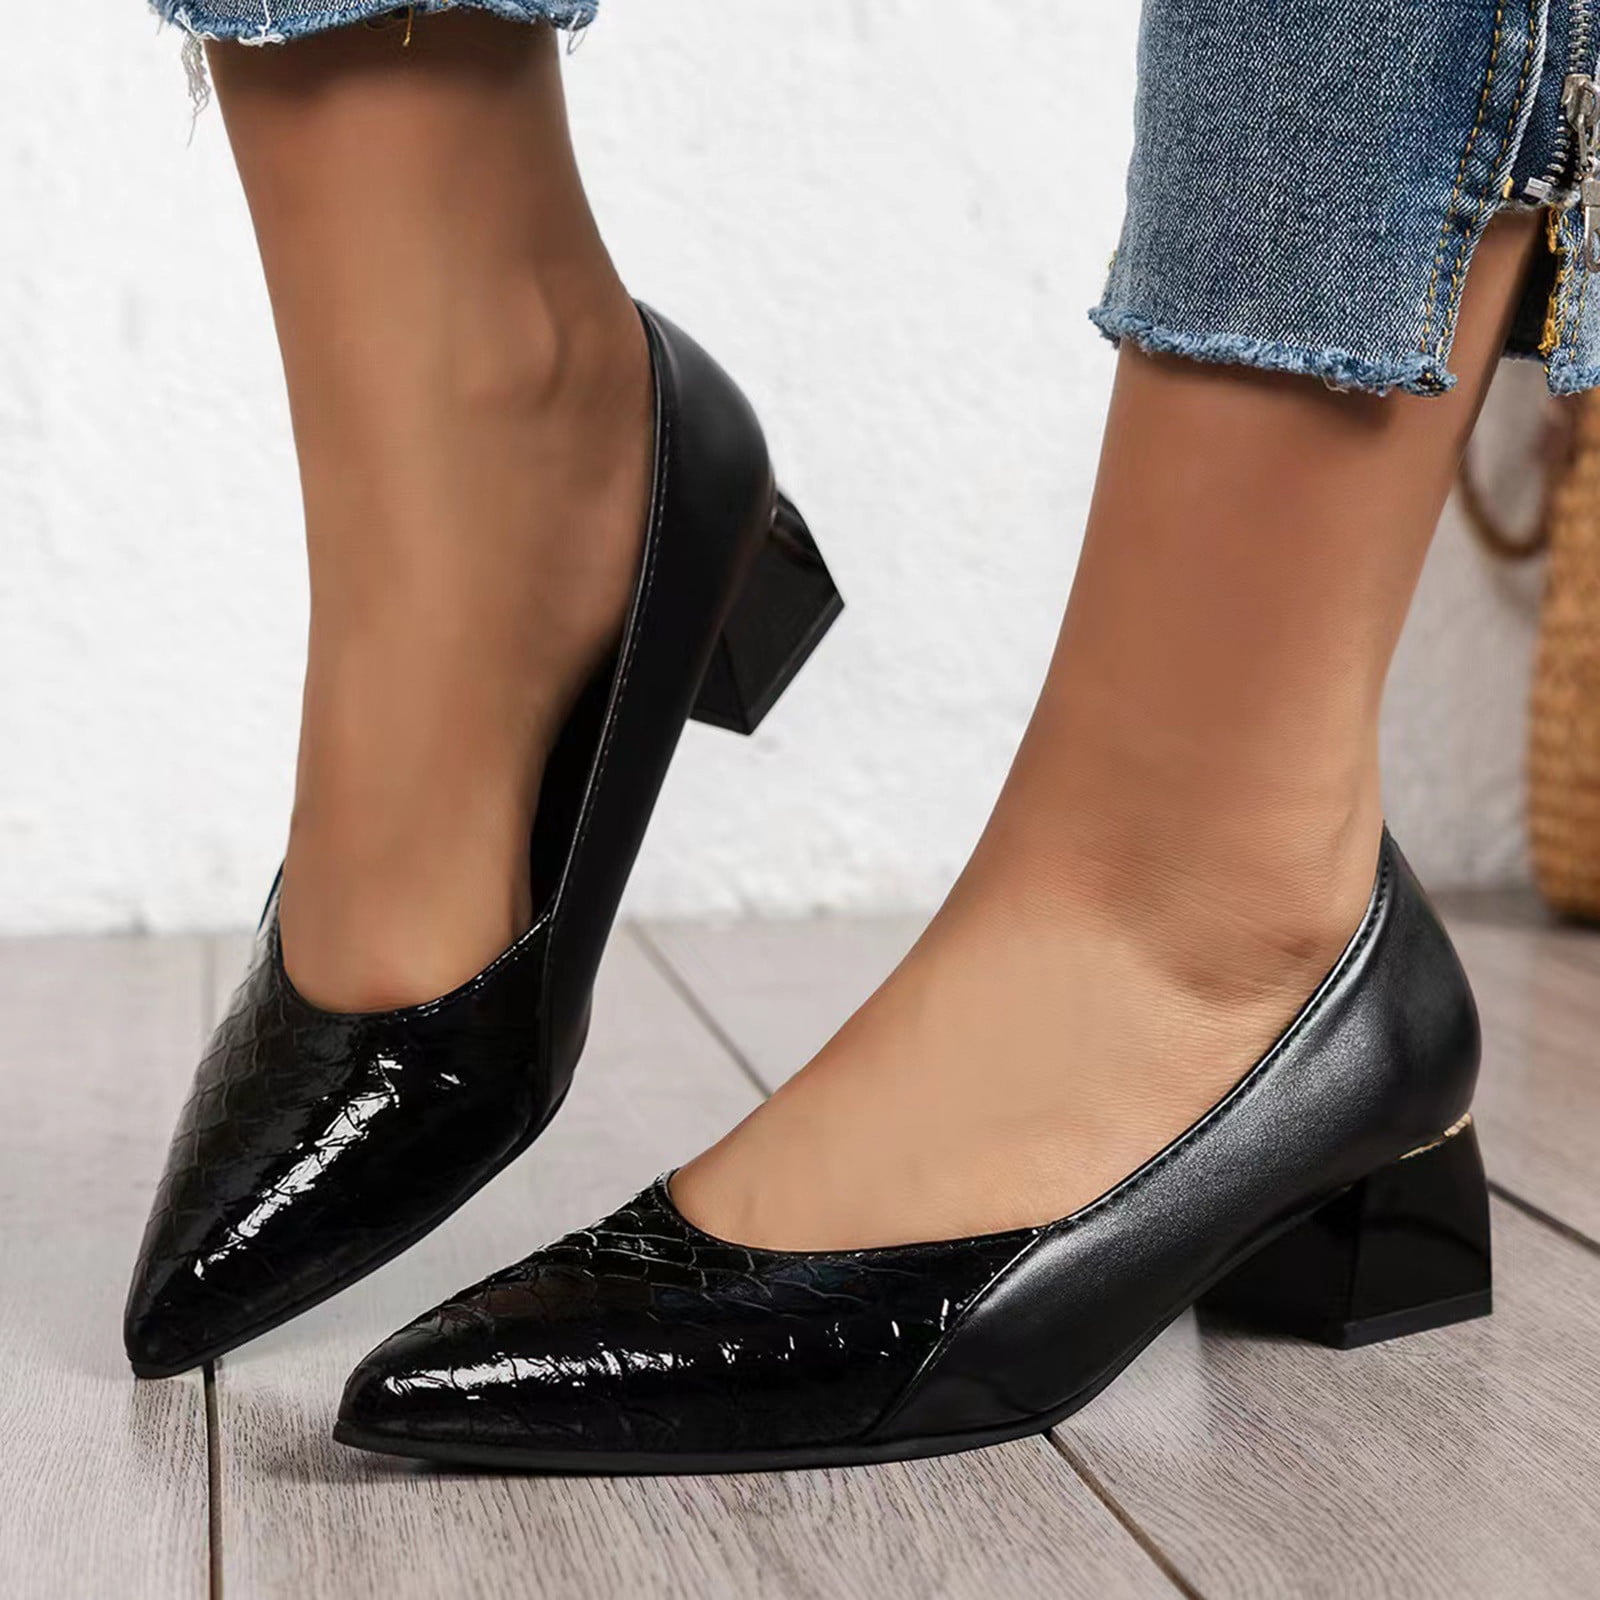 low heel dress shoes